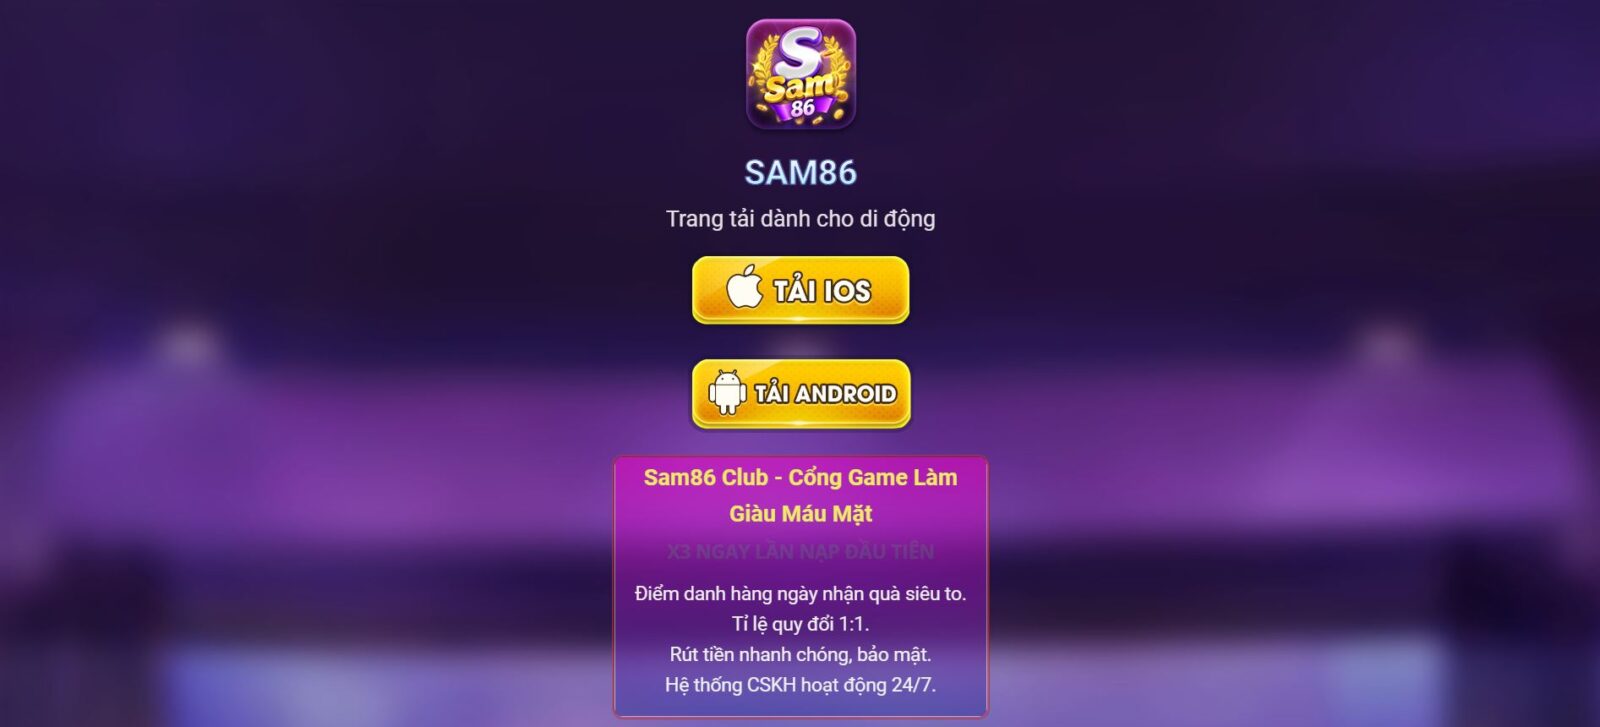 Sam86 – Siêu Phẩm Game Bài, Làm Giàu Cấp Tốc